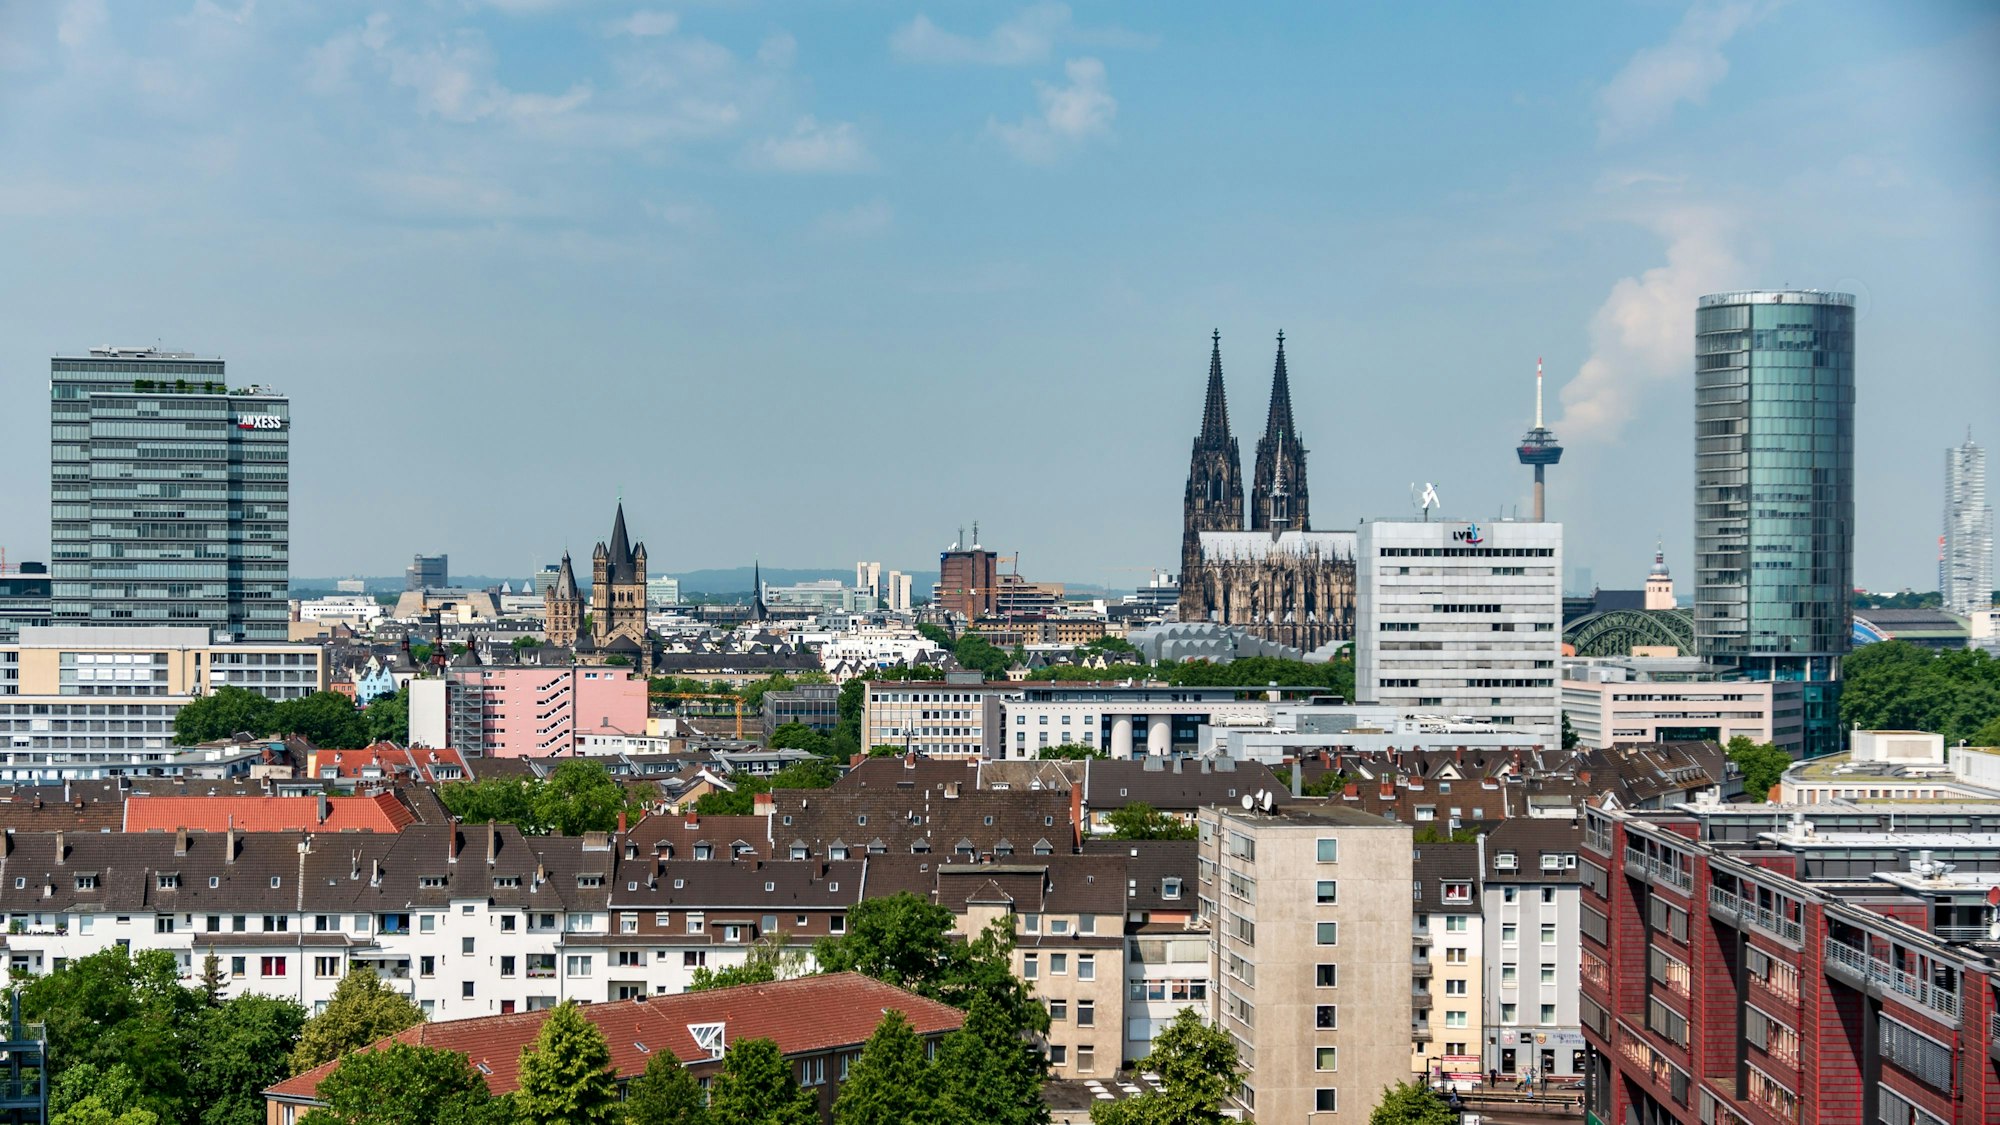 Köln von oben: Das Panoramabild zeigt den Blick auf die Innenstadt von Deutz aus, zu sehen sind unter anderemder Kölner Dom, der LVR-Turm, der Colonius-Fernsehturm sowie das Stadthaus.